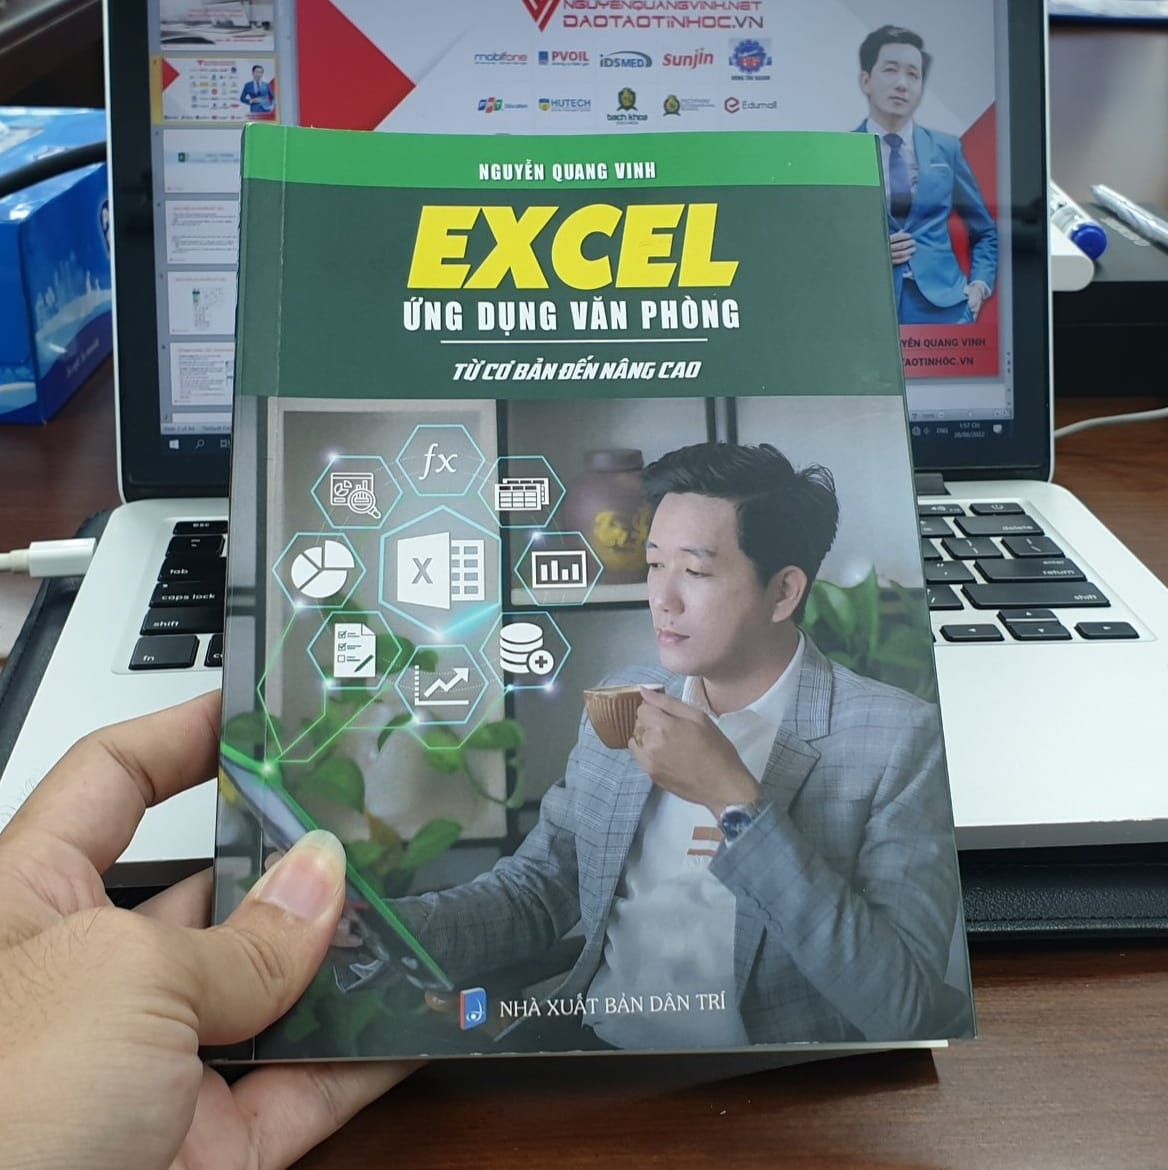 Trên tay cuốn sách Excel ứng dụng văn phòng từ cơ bản đến nâng cao